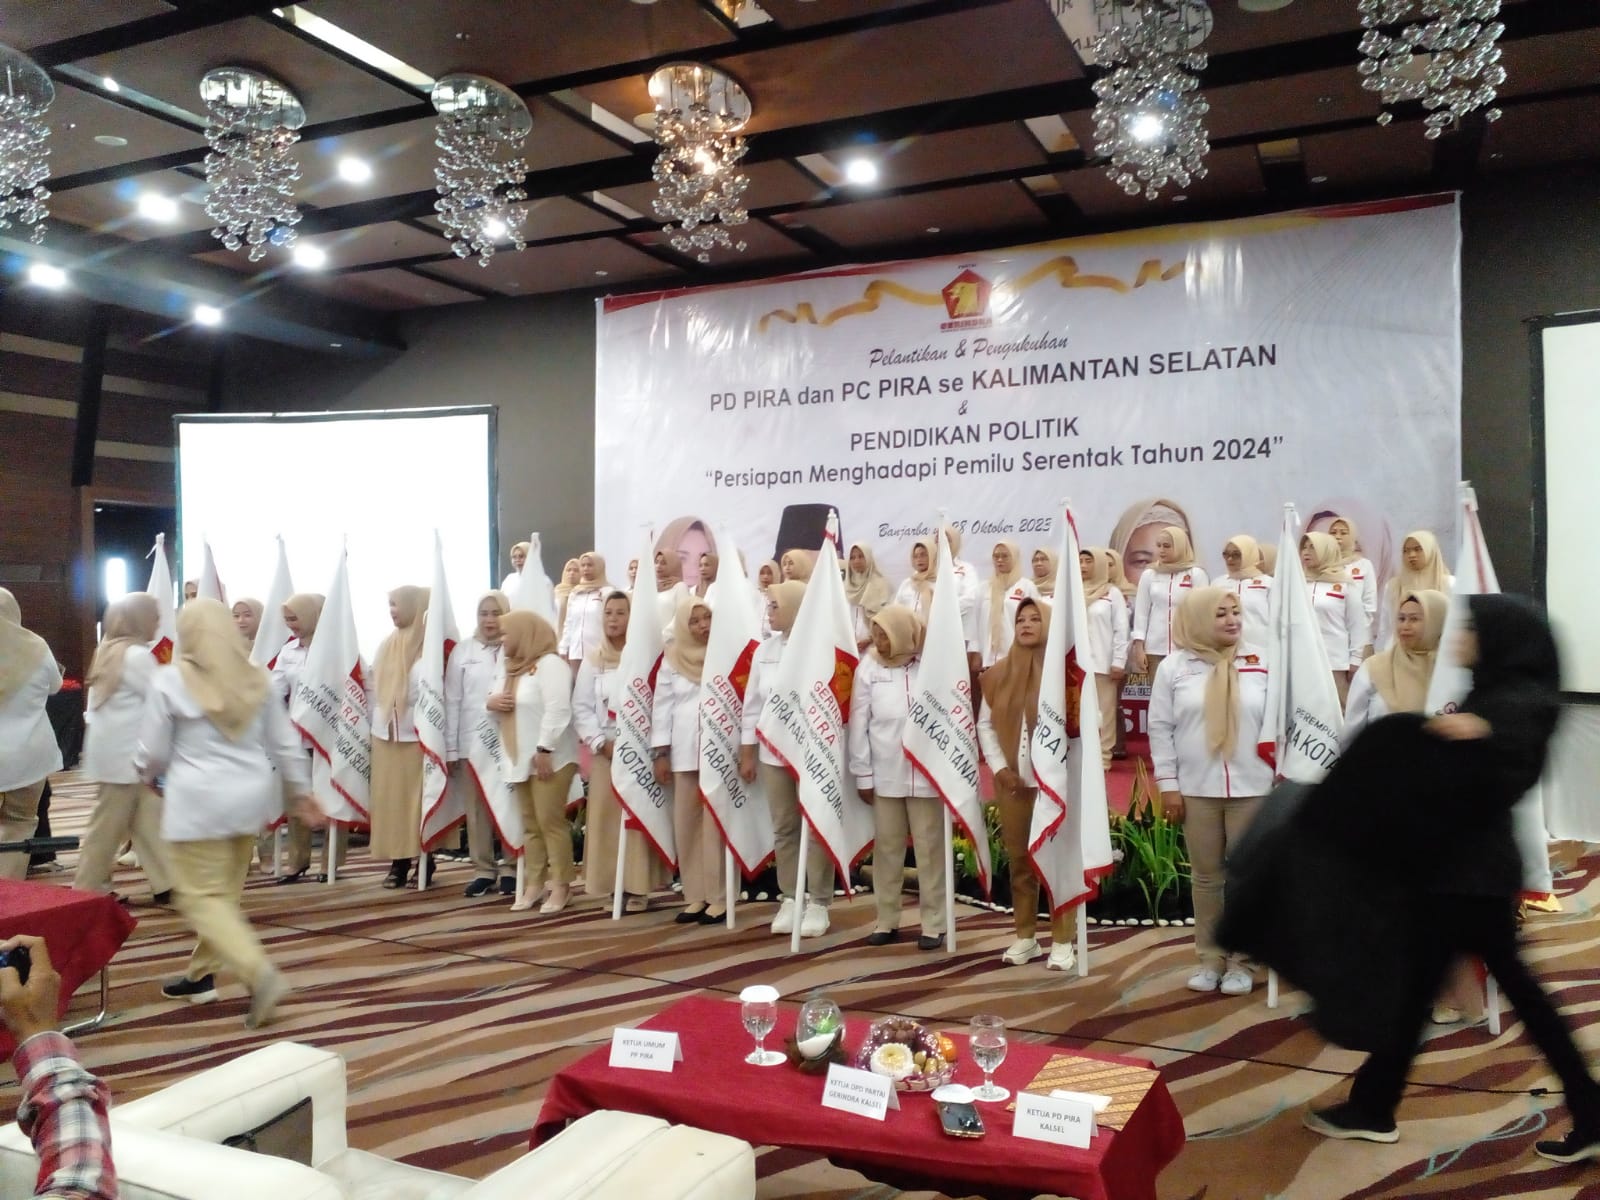 Perempuan Indonesia Raya Kalimantan Selatan Dilantik di Hari Sumpah Pemuda, Siap Menangkan Prabowo - Gibran